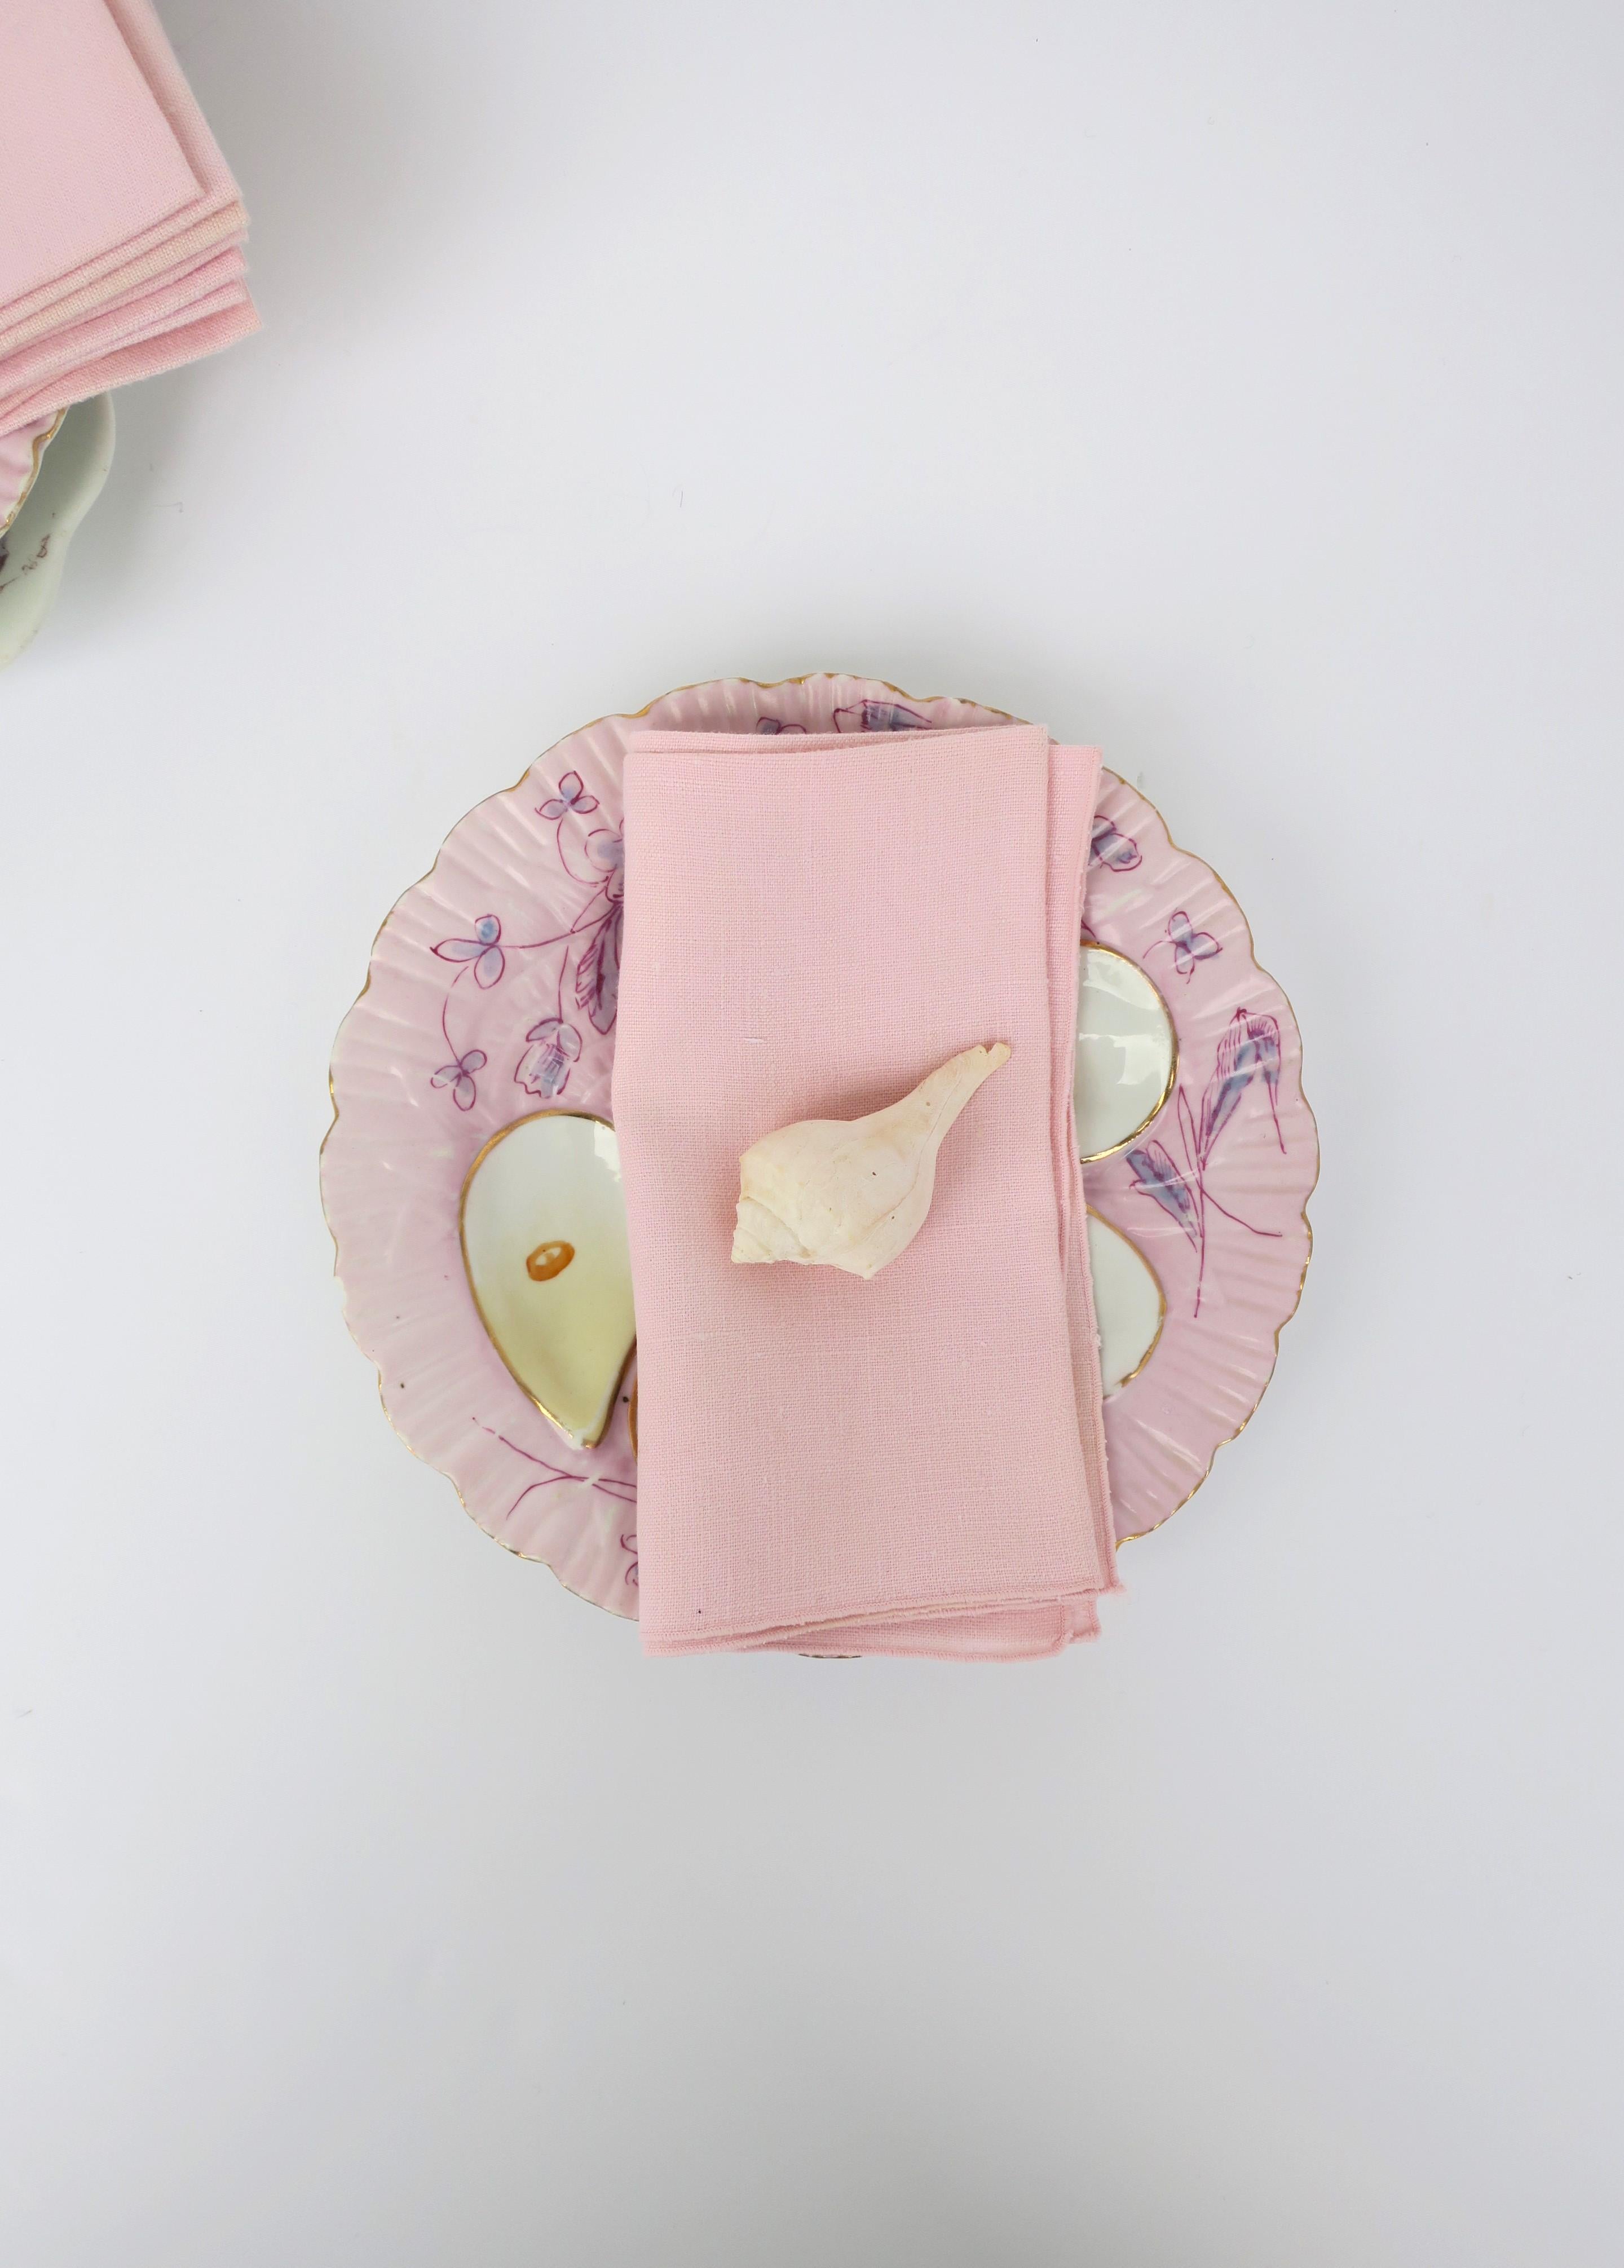 Pink Linen Dinner Napkins, Set of 10 For Sale 3